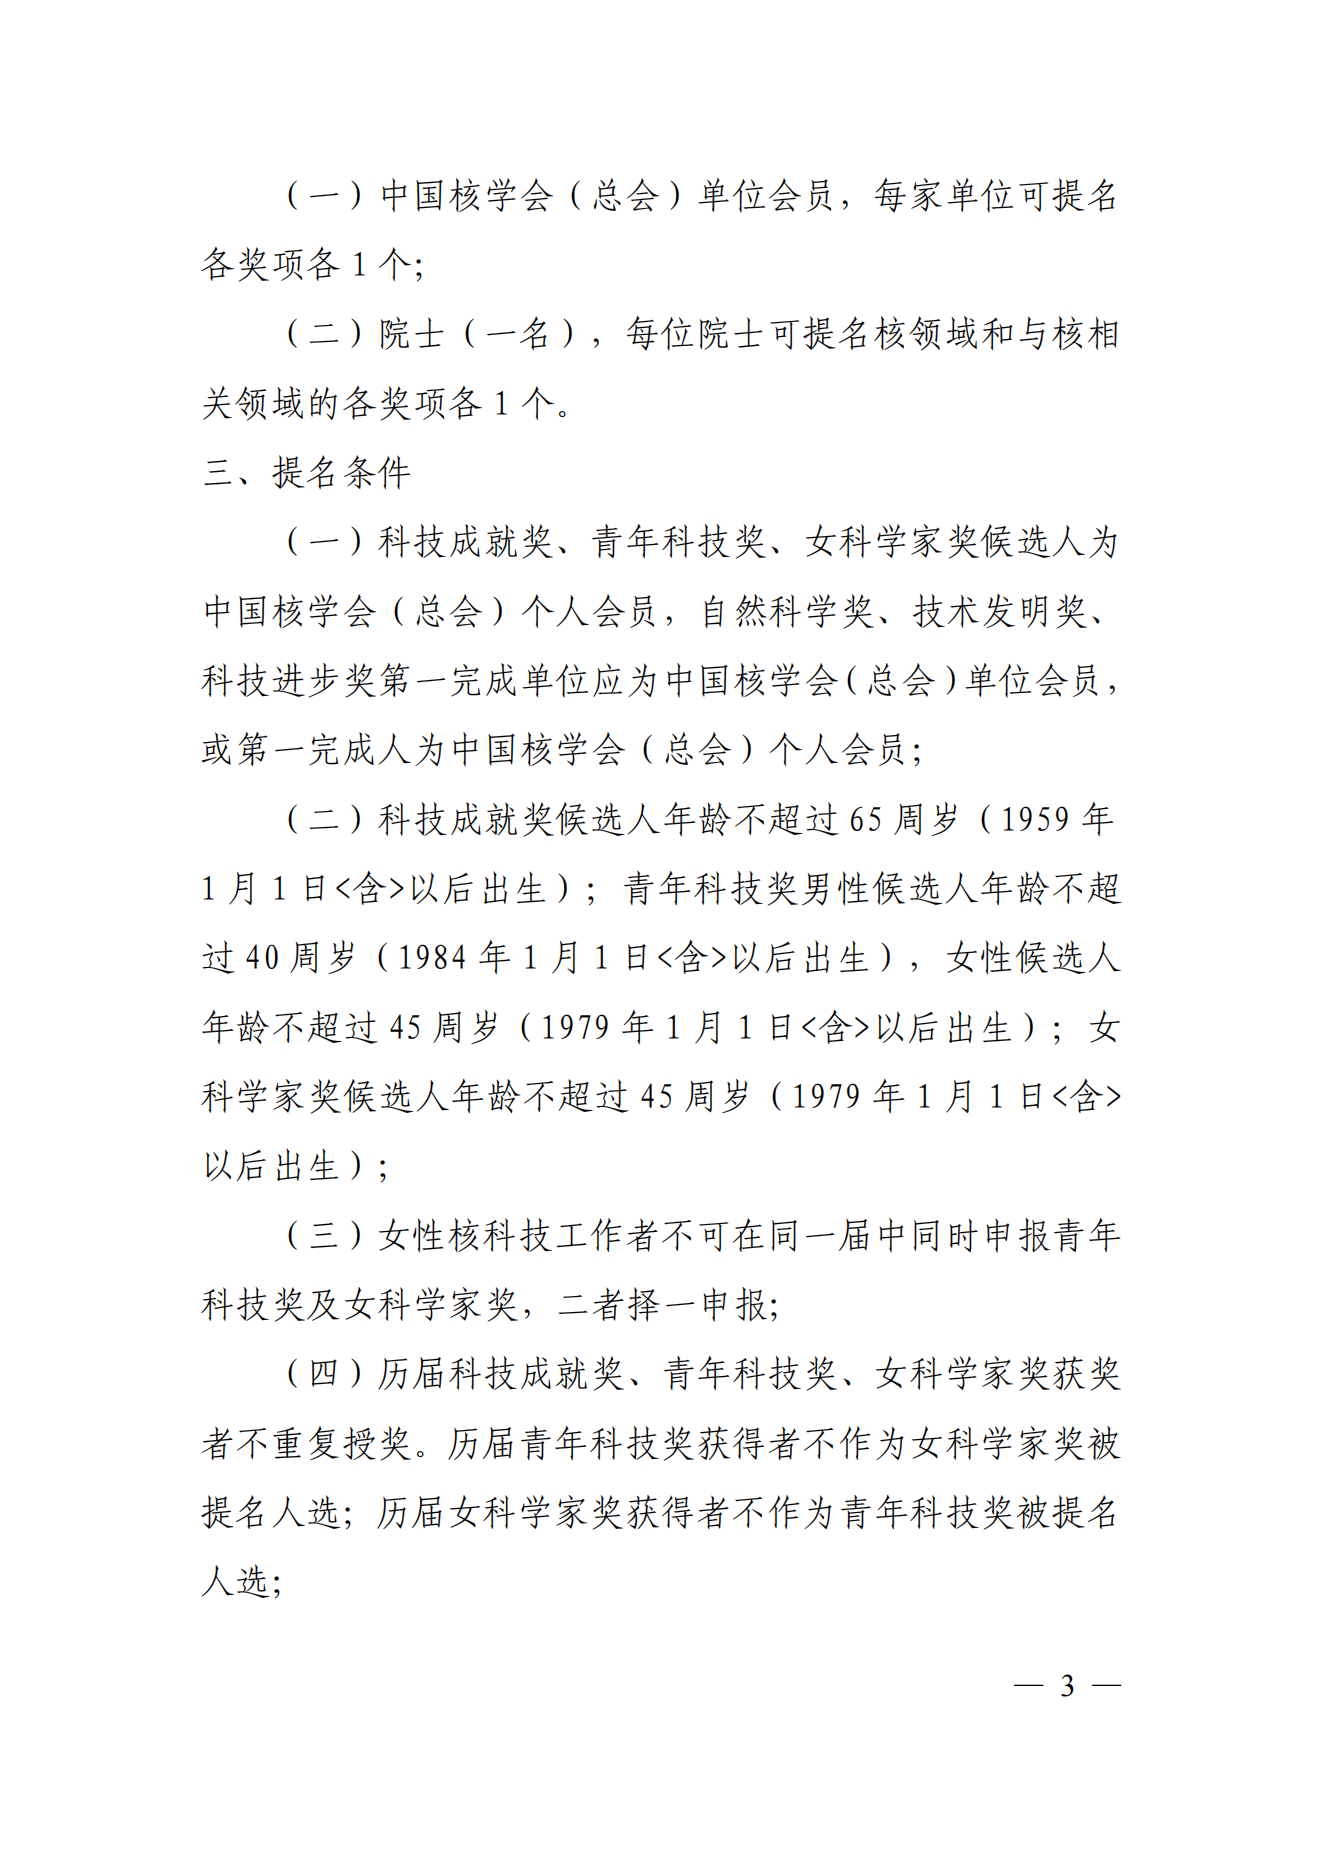 关于推荐2024年度中国核学会科学技术奖的通知-3.1_02.png